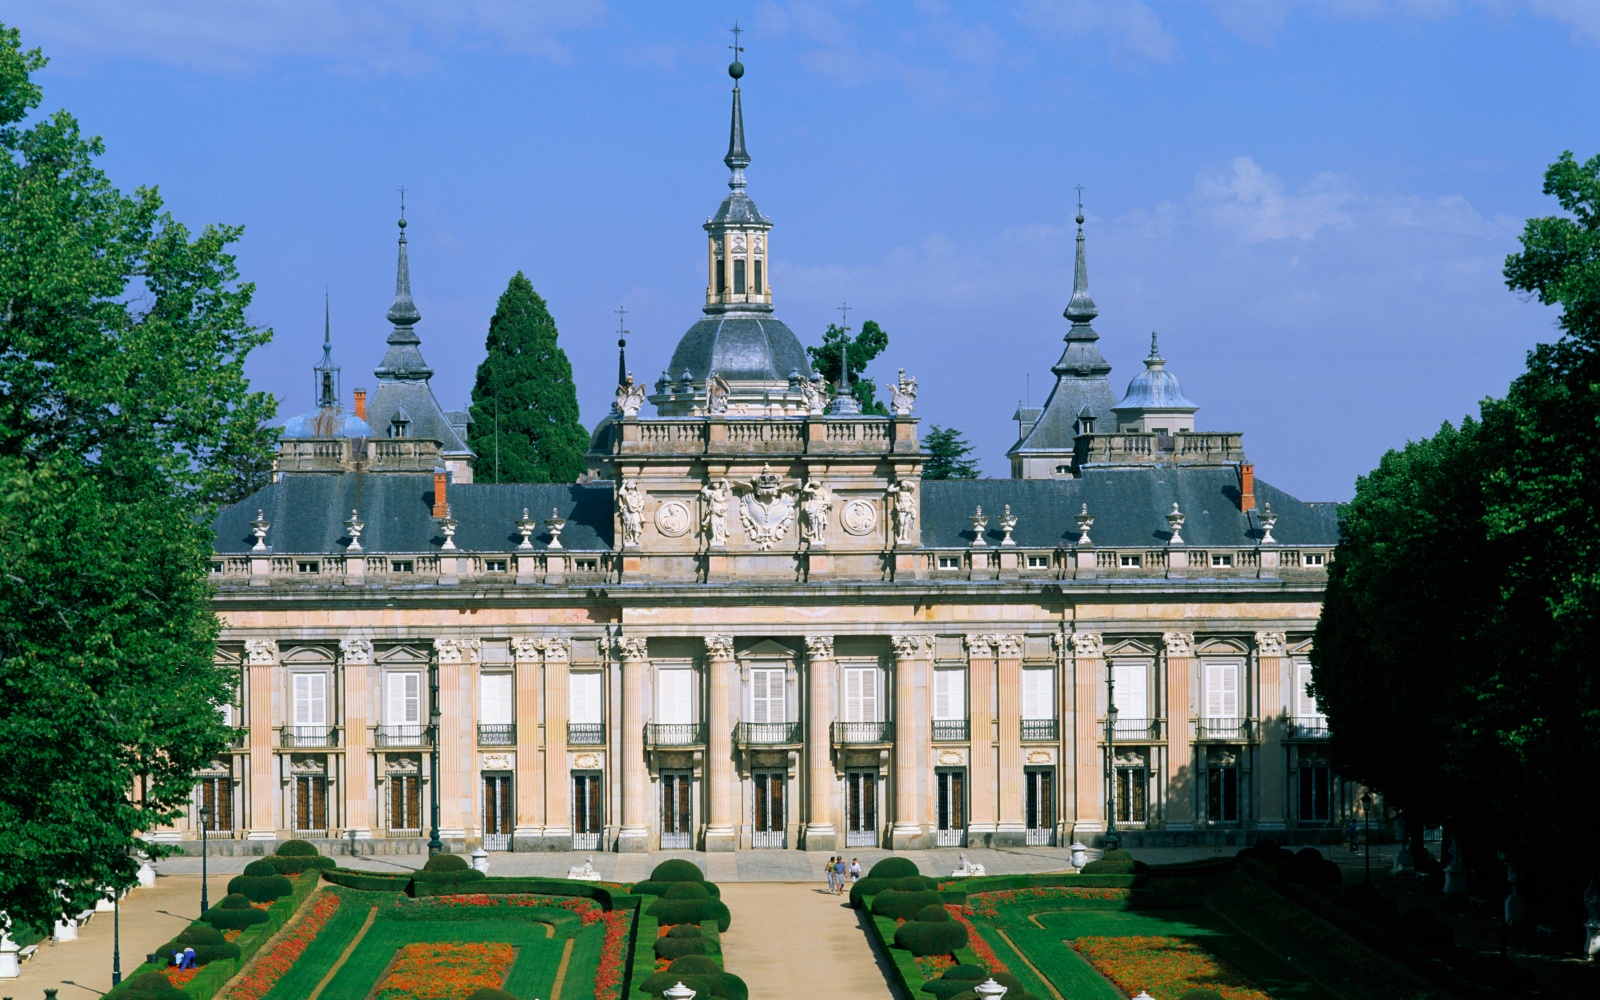 La Granja Palace